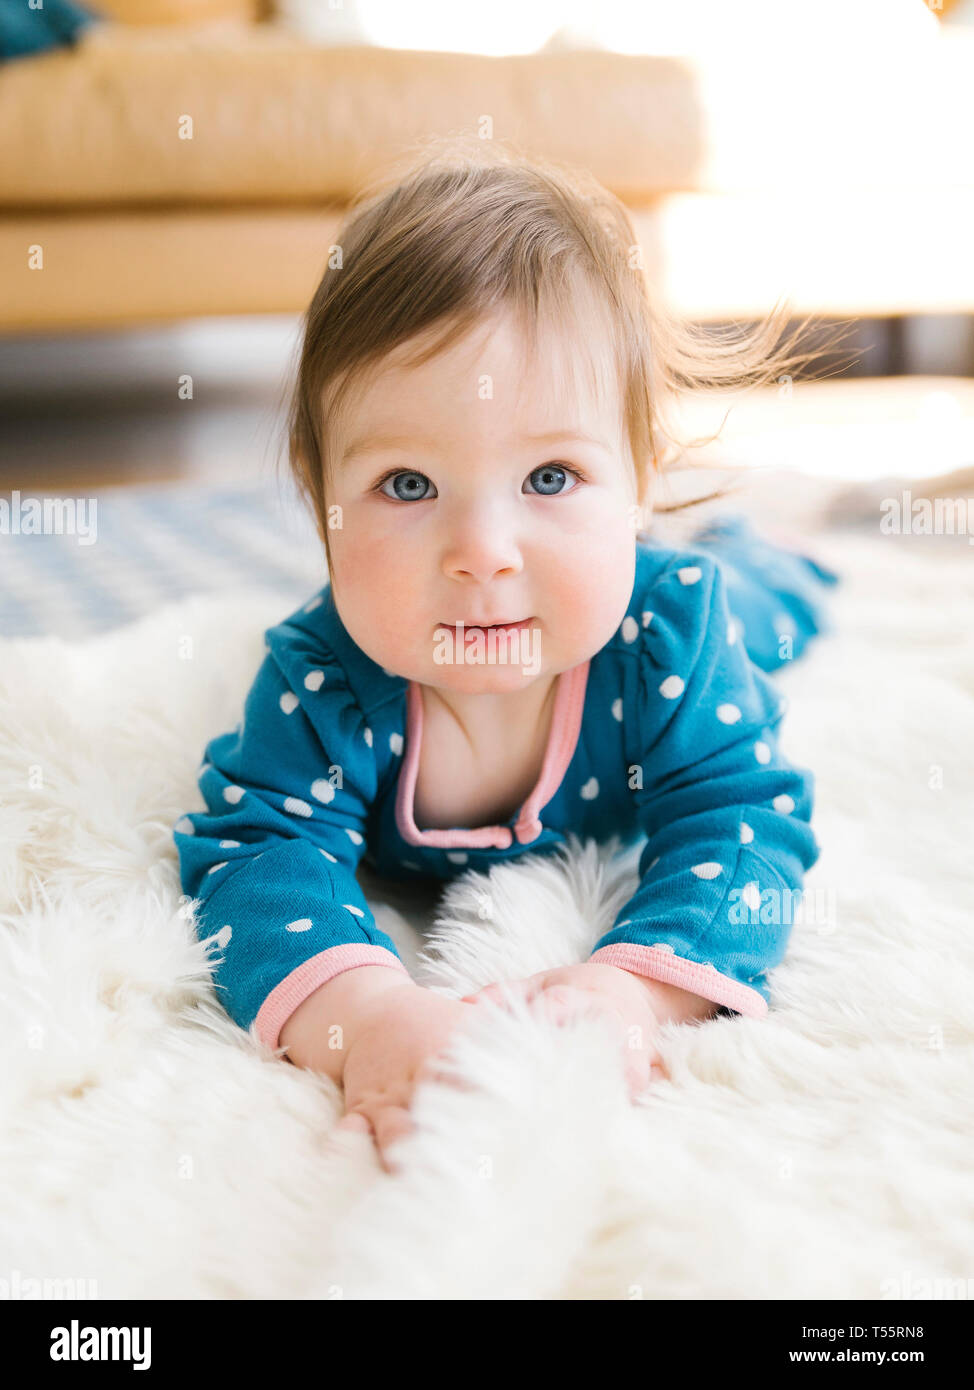 Baby girl lying on rug Stock Photo